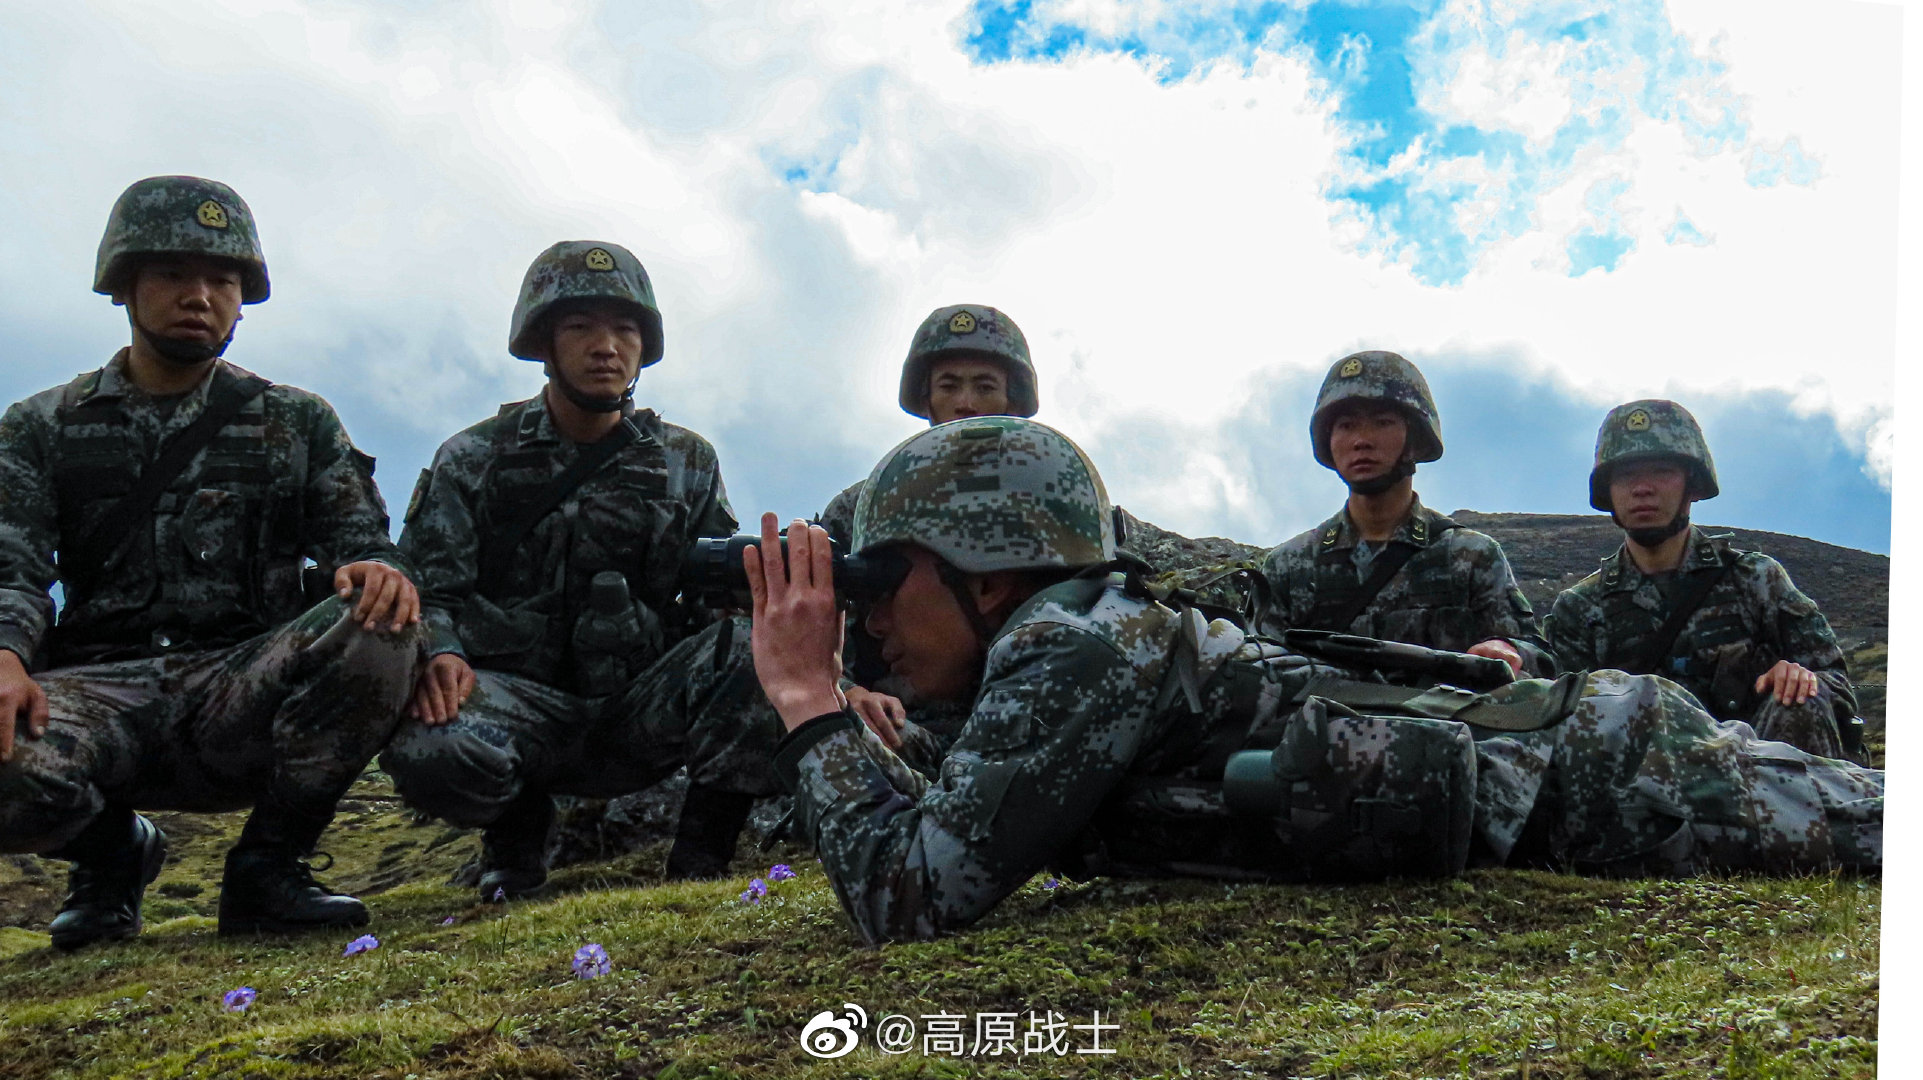 致敬军人 中数新丽江影城邀请300余名驻丽部队官兵免费观影